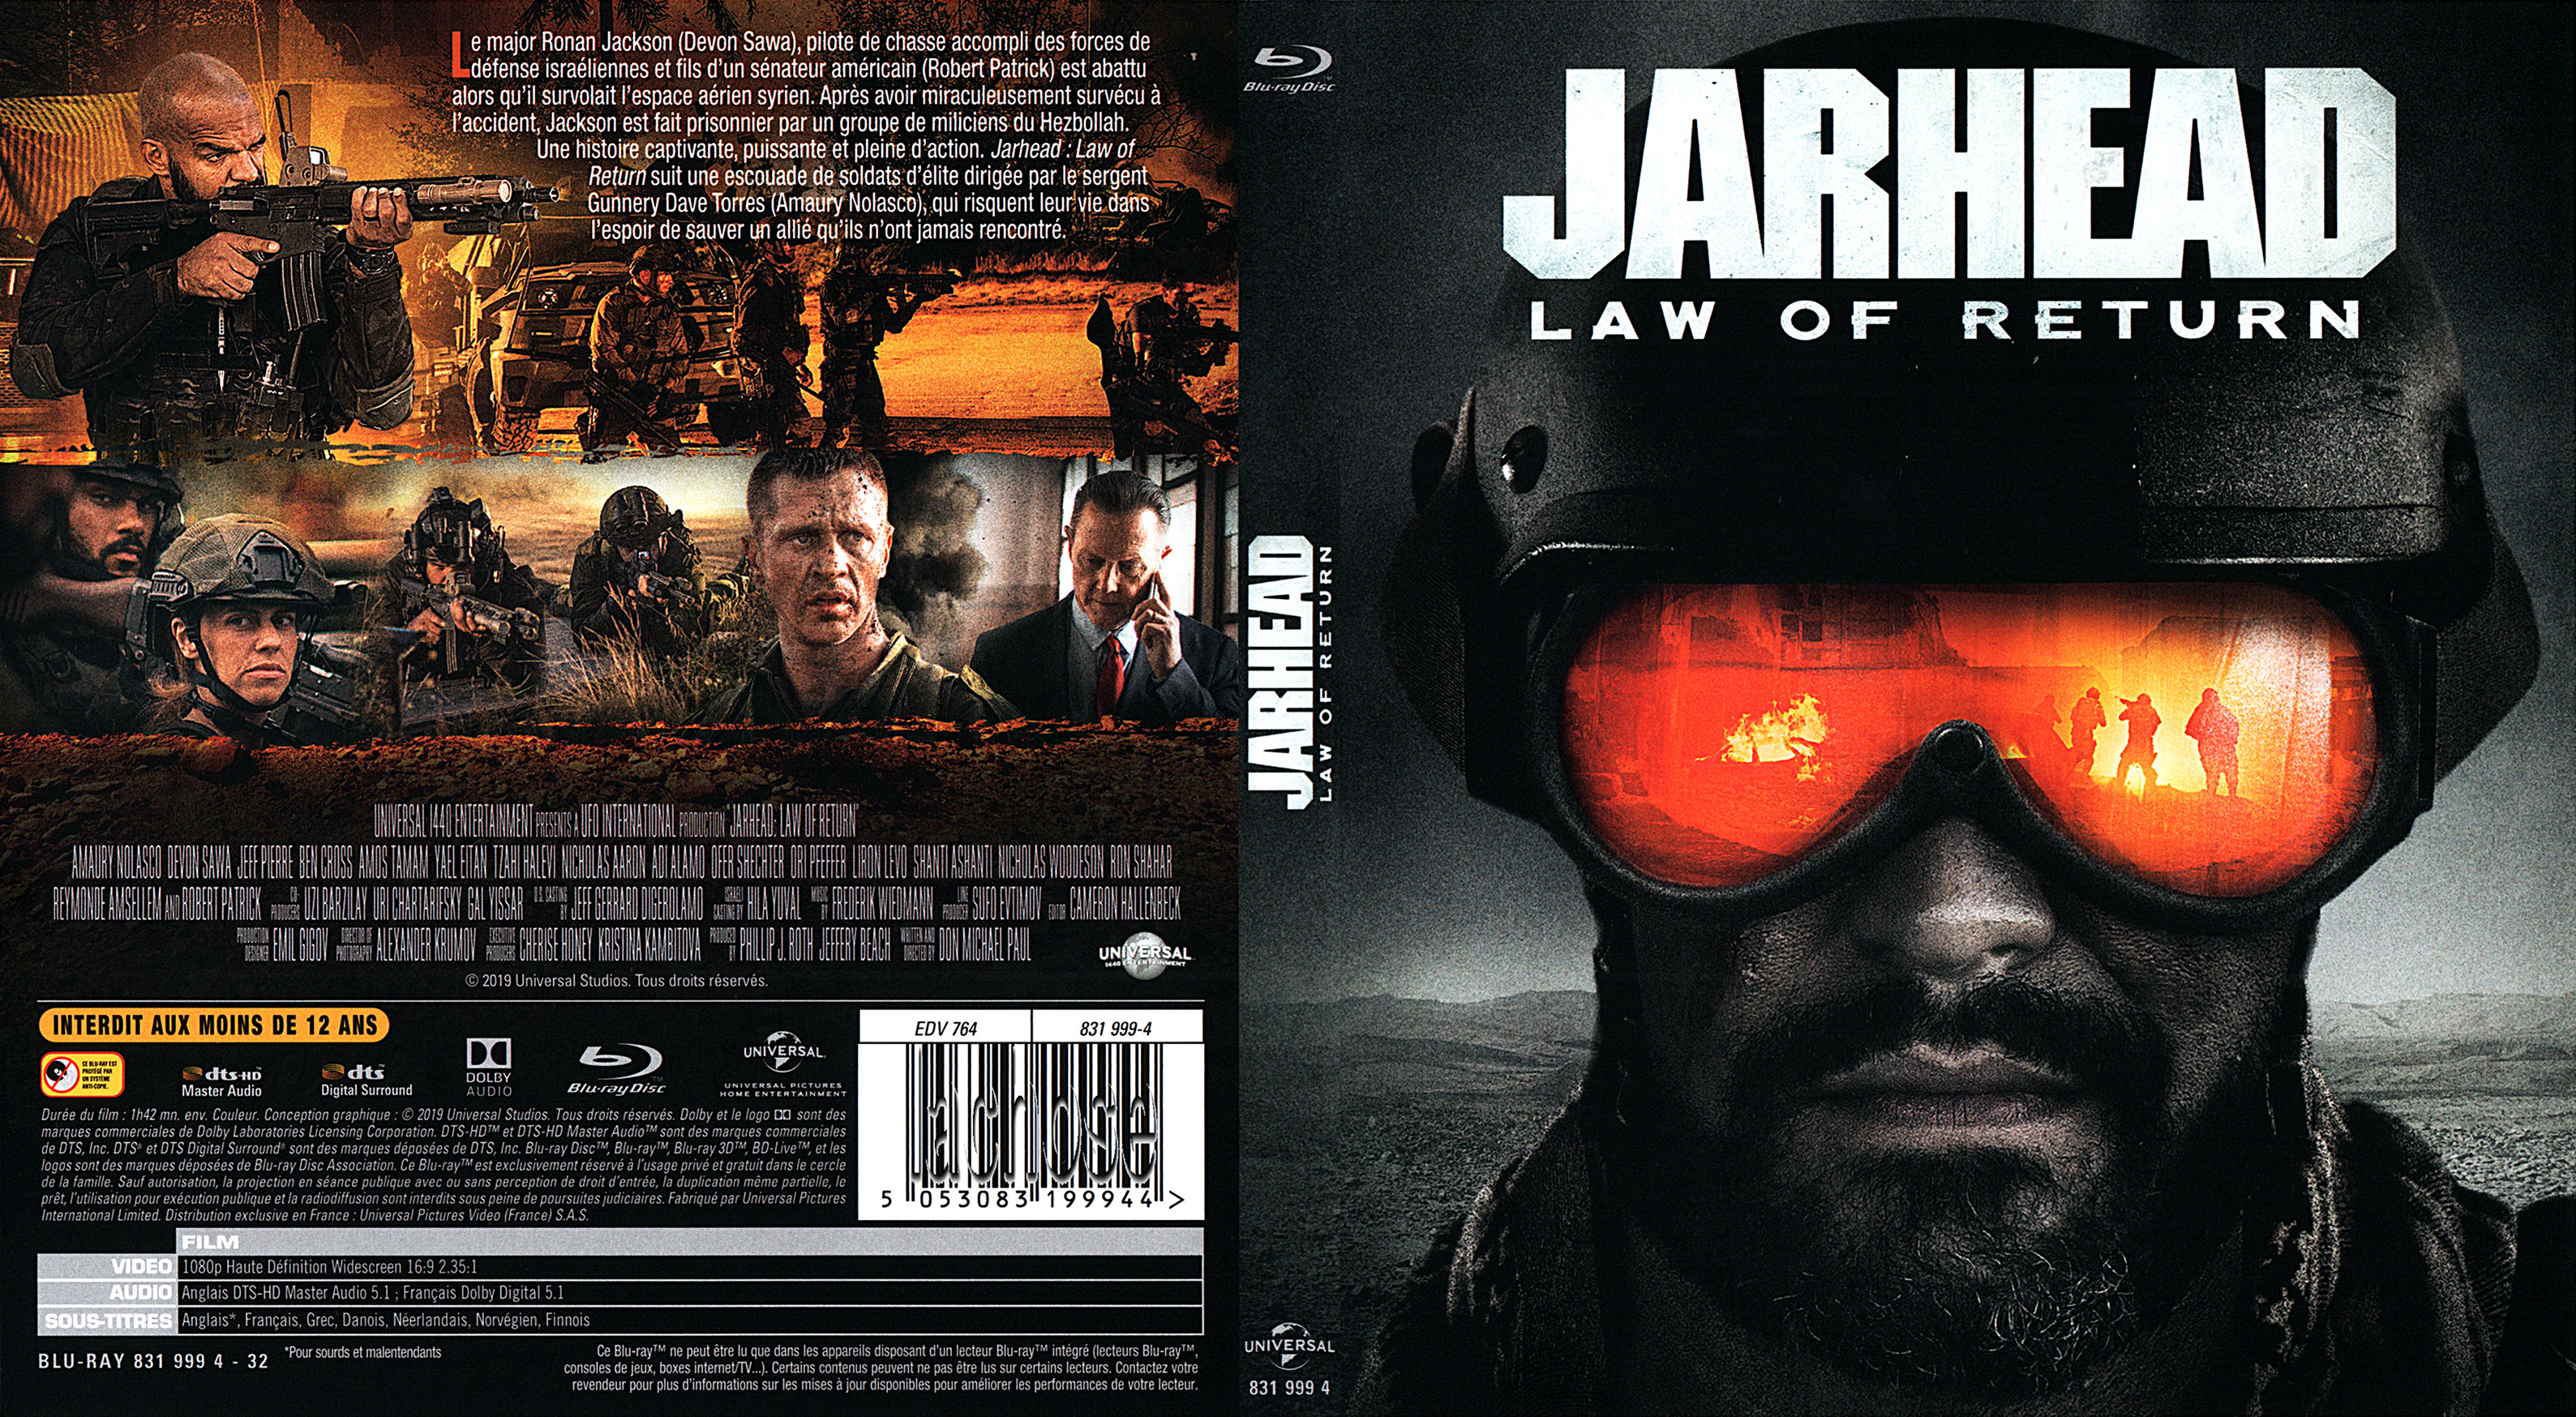 Jaquette DVD Jarhead law of return (BLU-RAY)